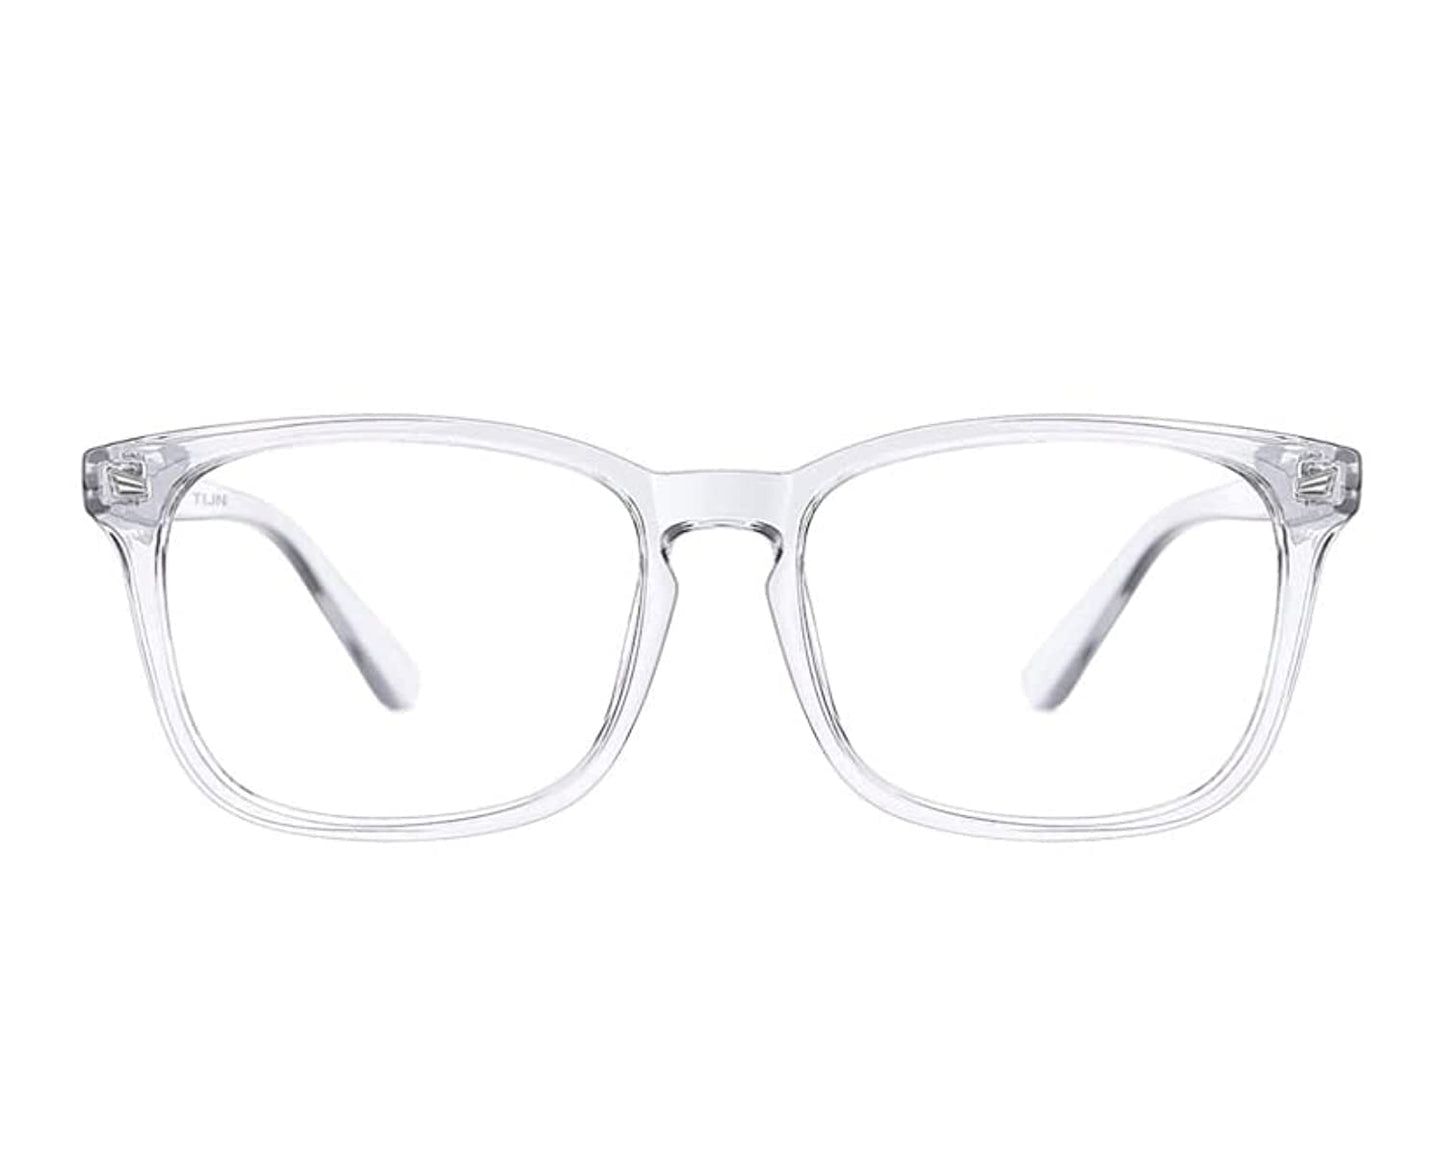 Blue light blocking glasses. Blue light filter glasses. Eyewear for men and woman. Prevents eye strain by UV and blue light blocking. Computer glasses. Tv Glasses. Multi-colours